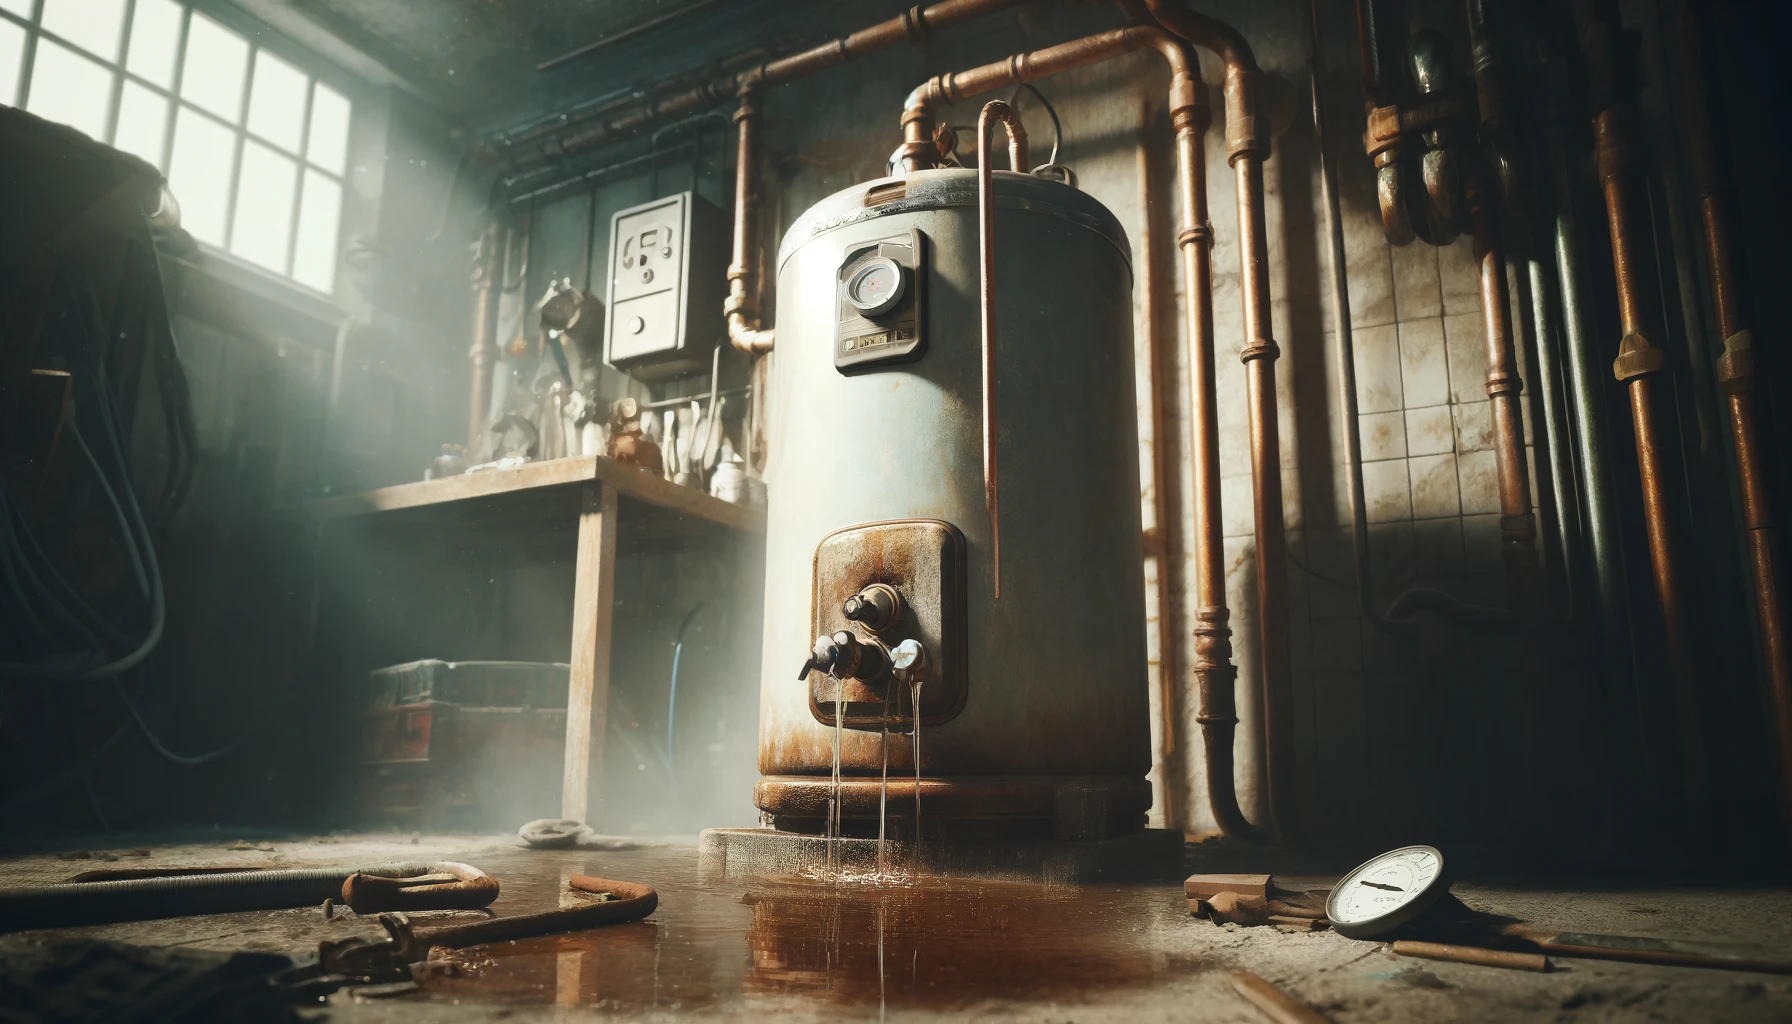 Vintage water heater in rustic workshop setting.